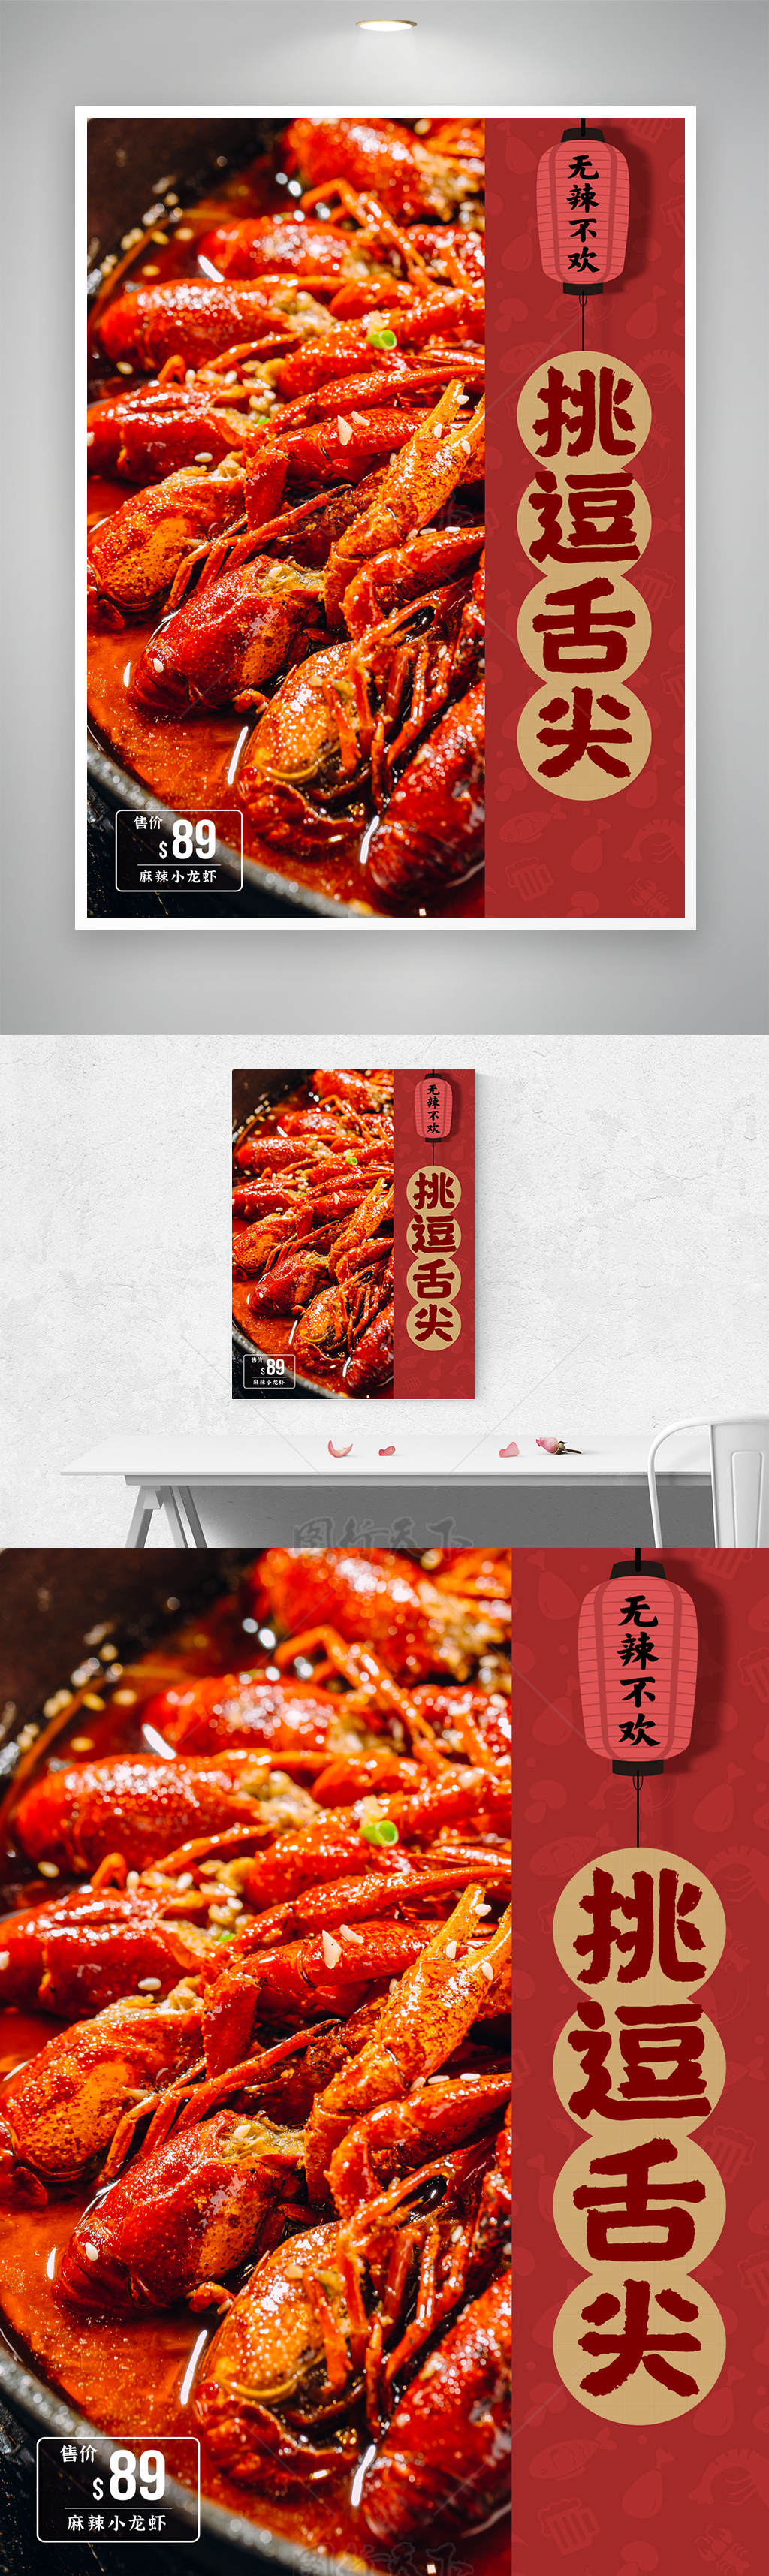 挑逗舌尖鲜红小龙虾宣传海报素材